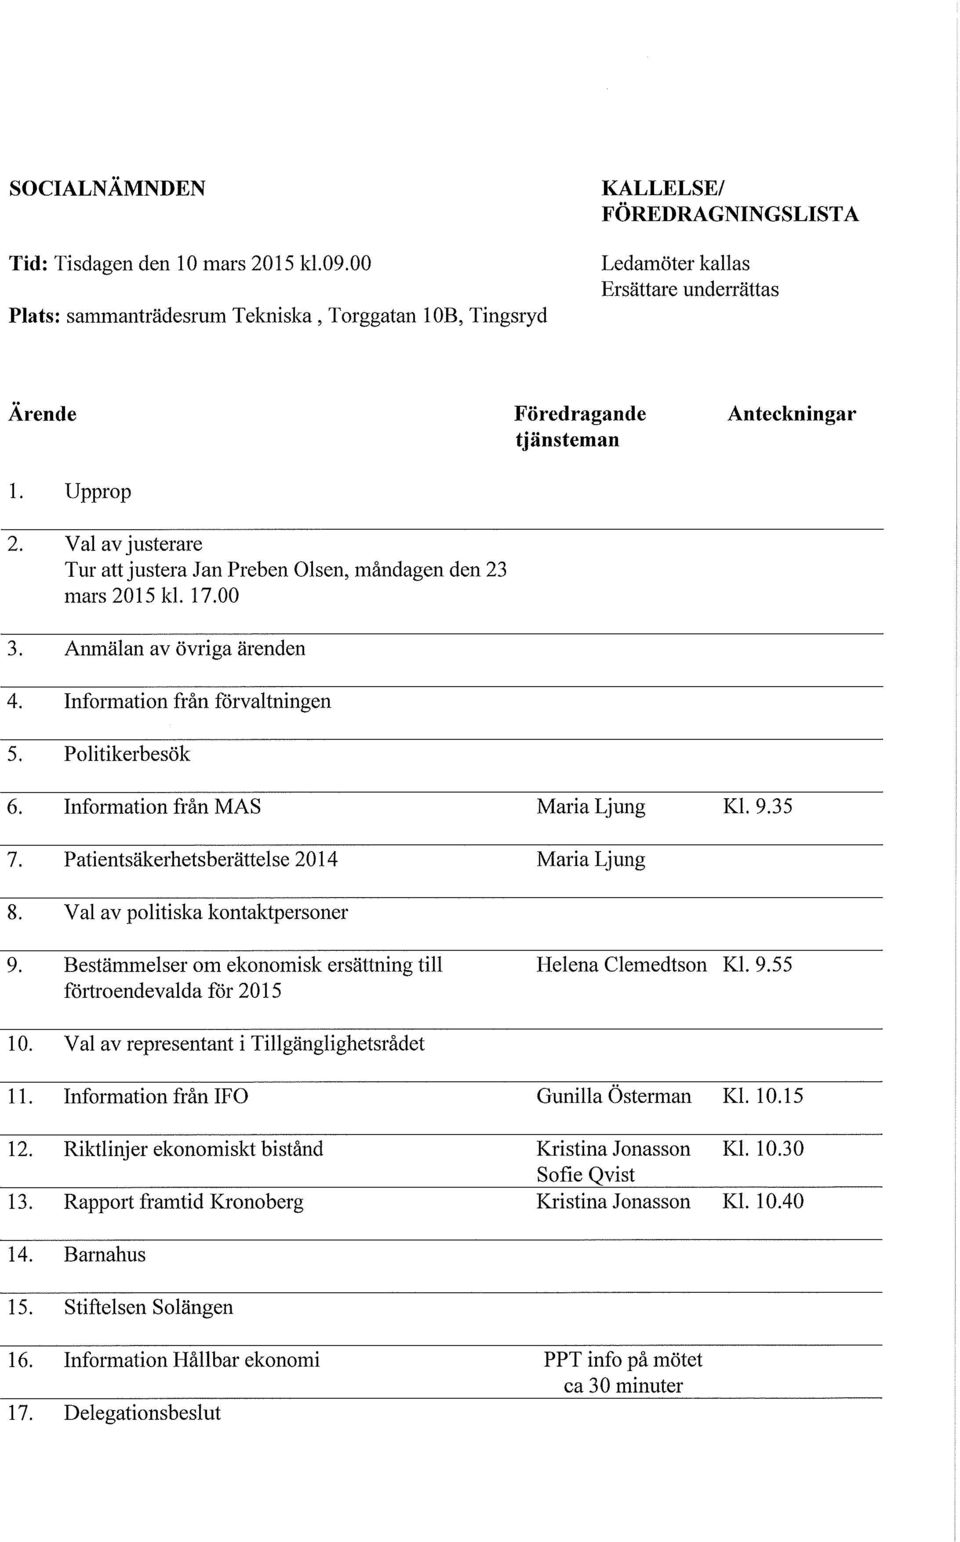 Patientsäkerhetsberättelse 2014 8. Val av politiska kontaktpersoner Föredragande tjänsteman Maria Ljung MariaLjung Anteckningar Kl. 9.35 9. 10. 11. 12. 13. 14. 15. 16. 17.